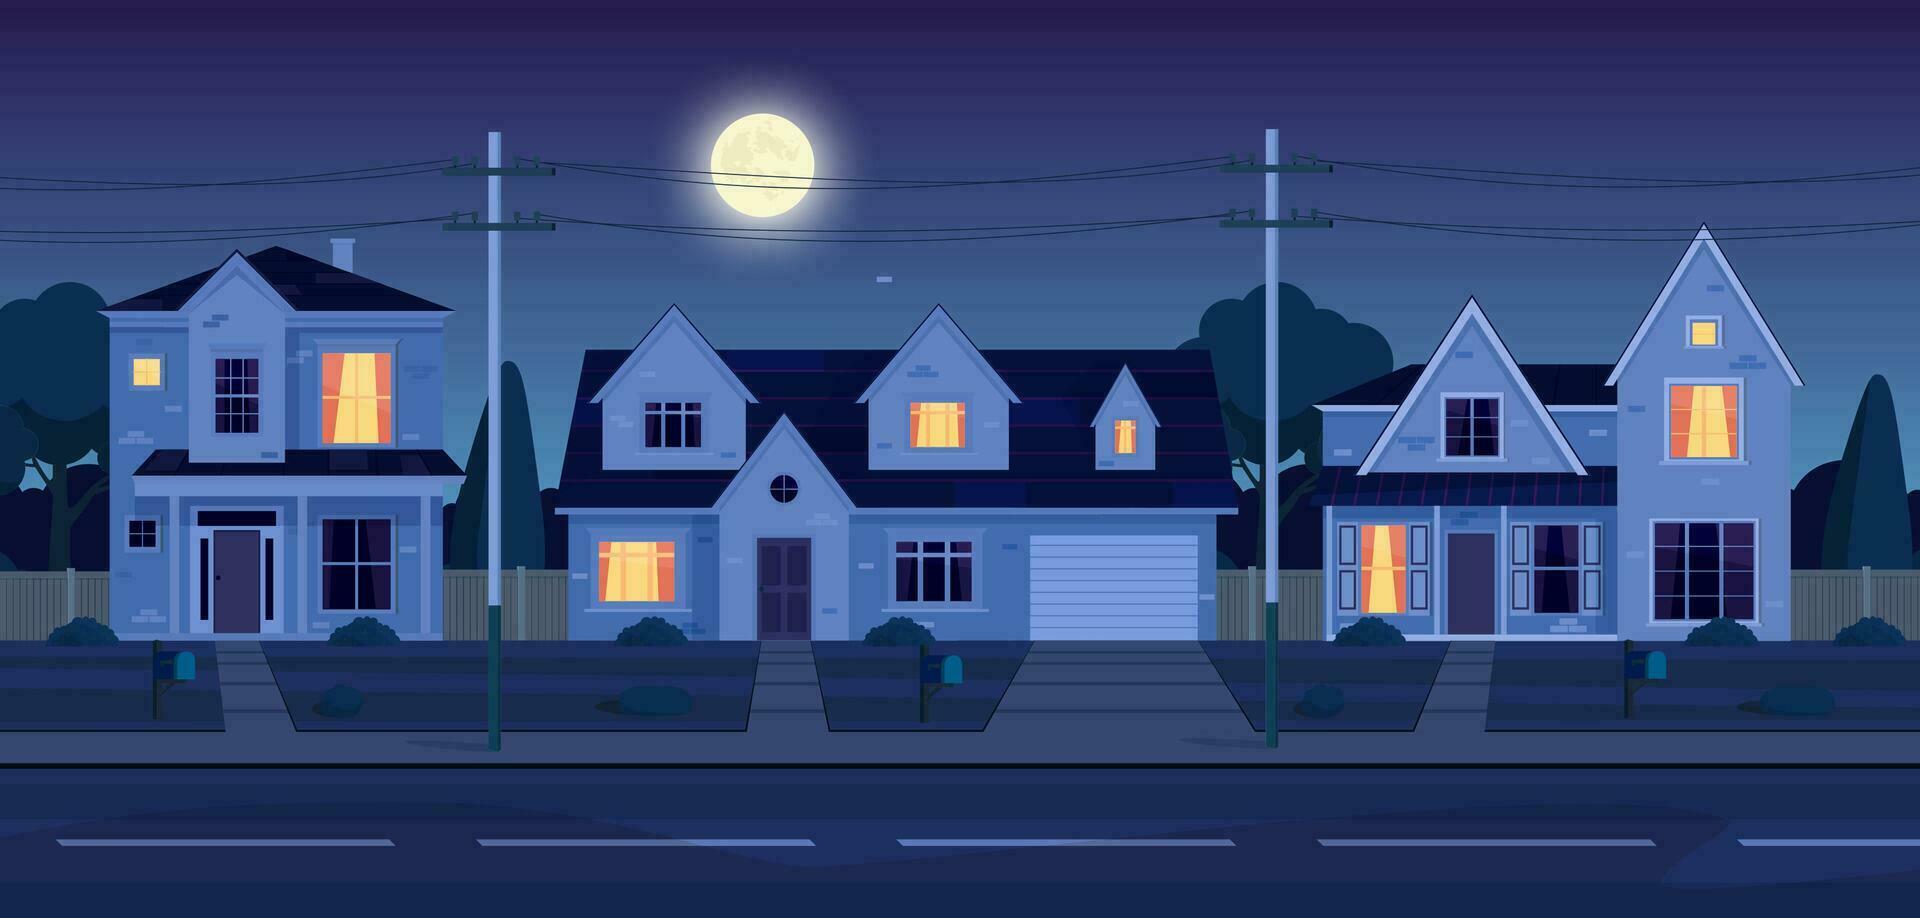 städtisch oder Vorort- Gegend beim Nacht mit echt Nachlass Eigentum, Häuser mit Beleuchtung. Karikatur Landschaft mit Vorort- Hütten, Mond und Sterne im dunkel Himmel. Vektor Illustration im ein eben Stil